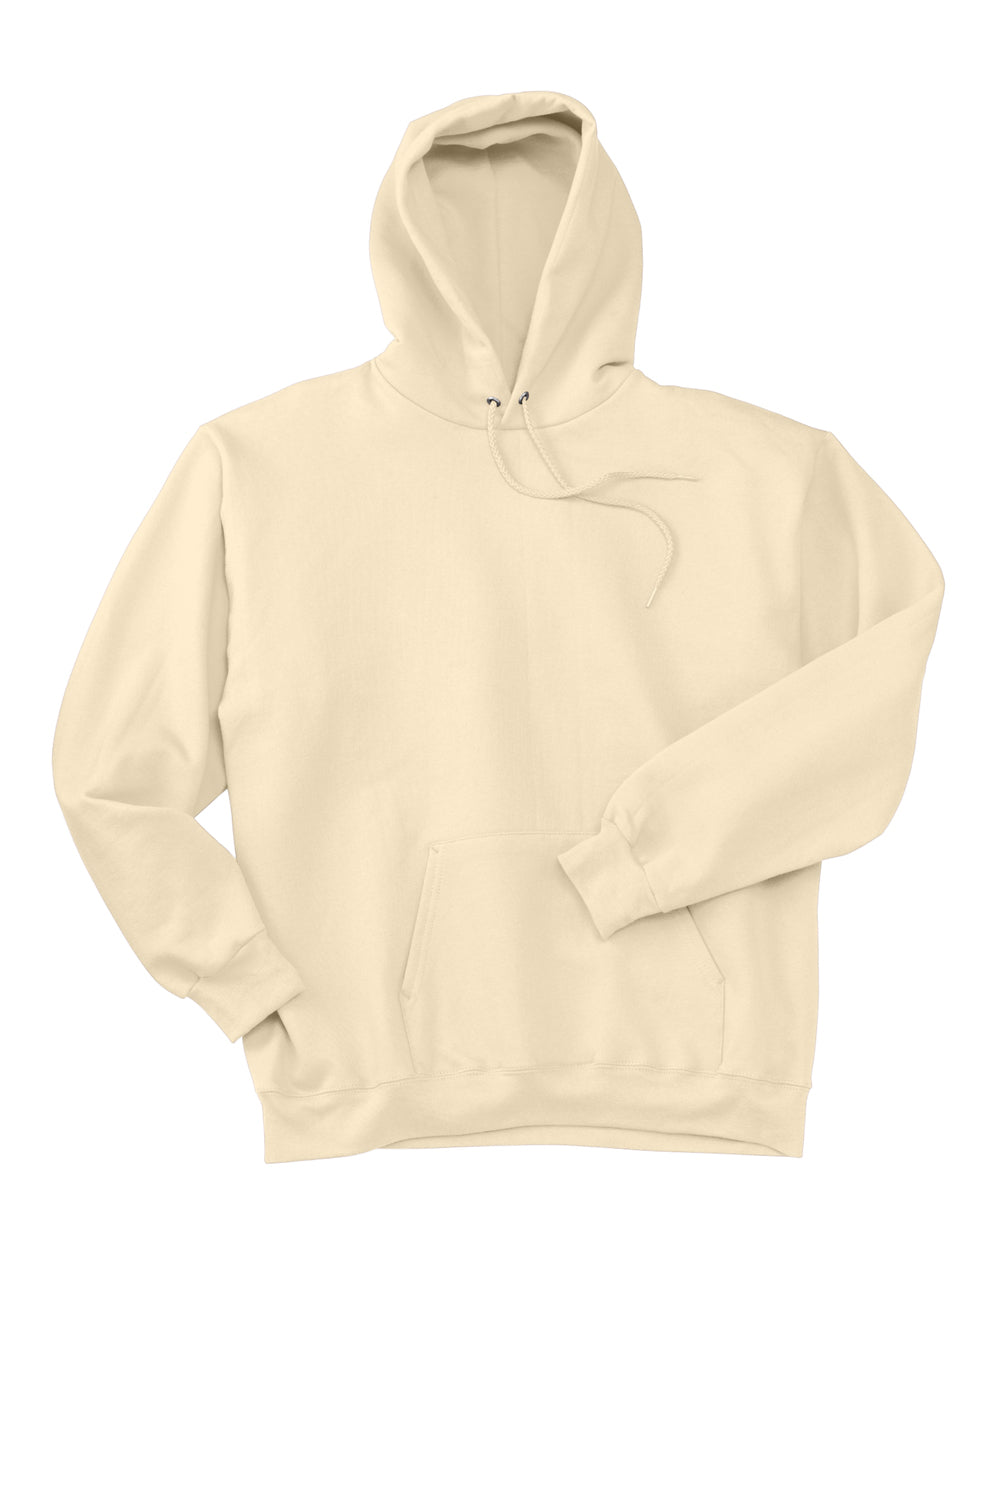 Hanes Mens Ultimate Cotton PrintPro XP Hooded Sweatshirt Hoodie Natural Flat Front